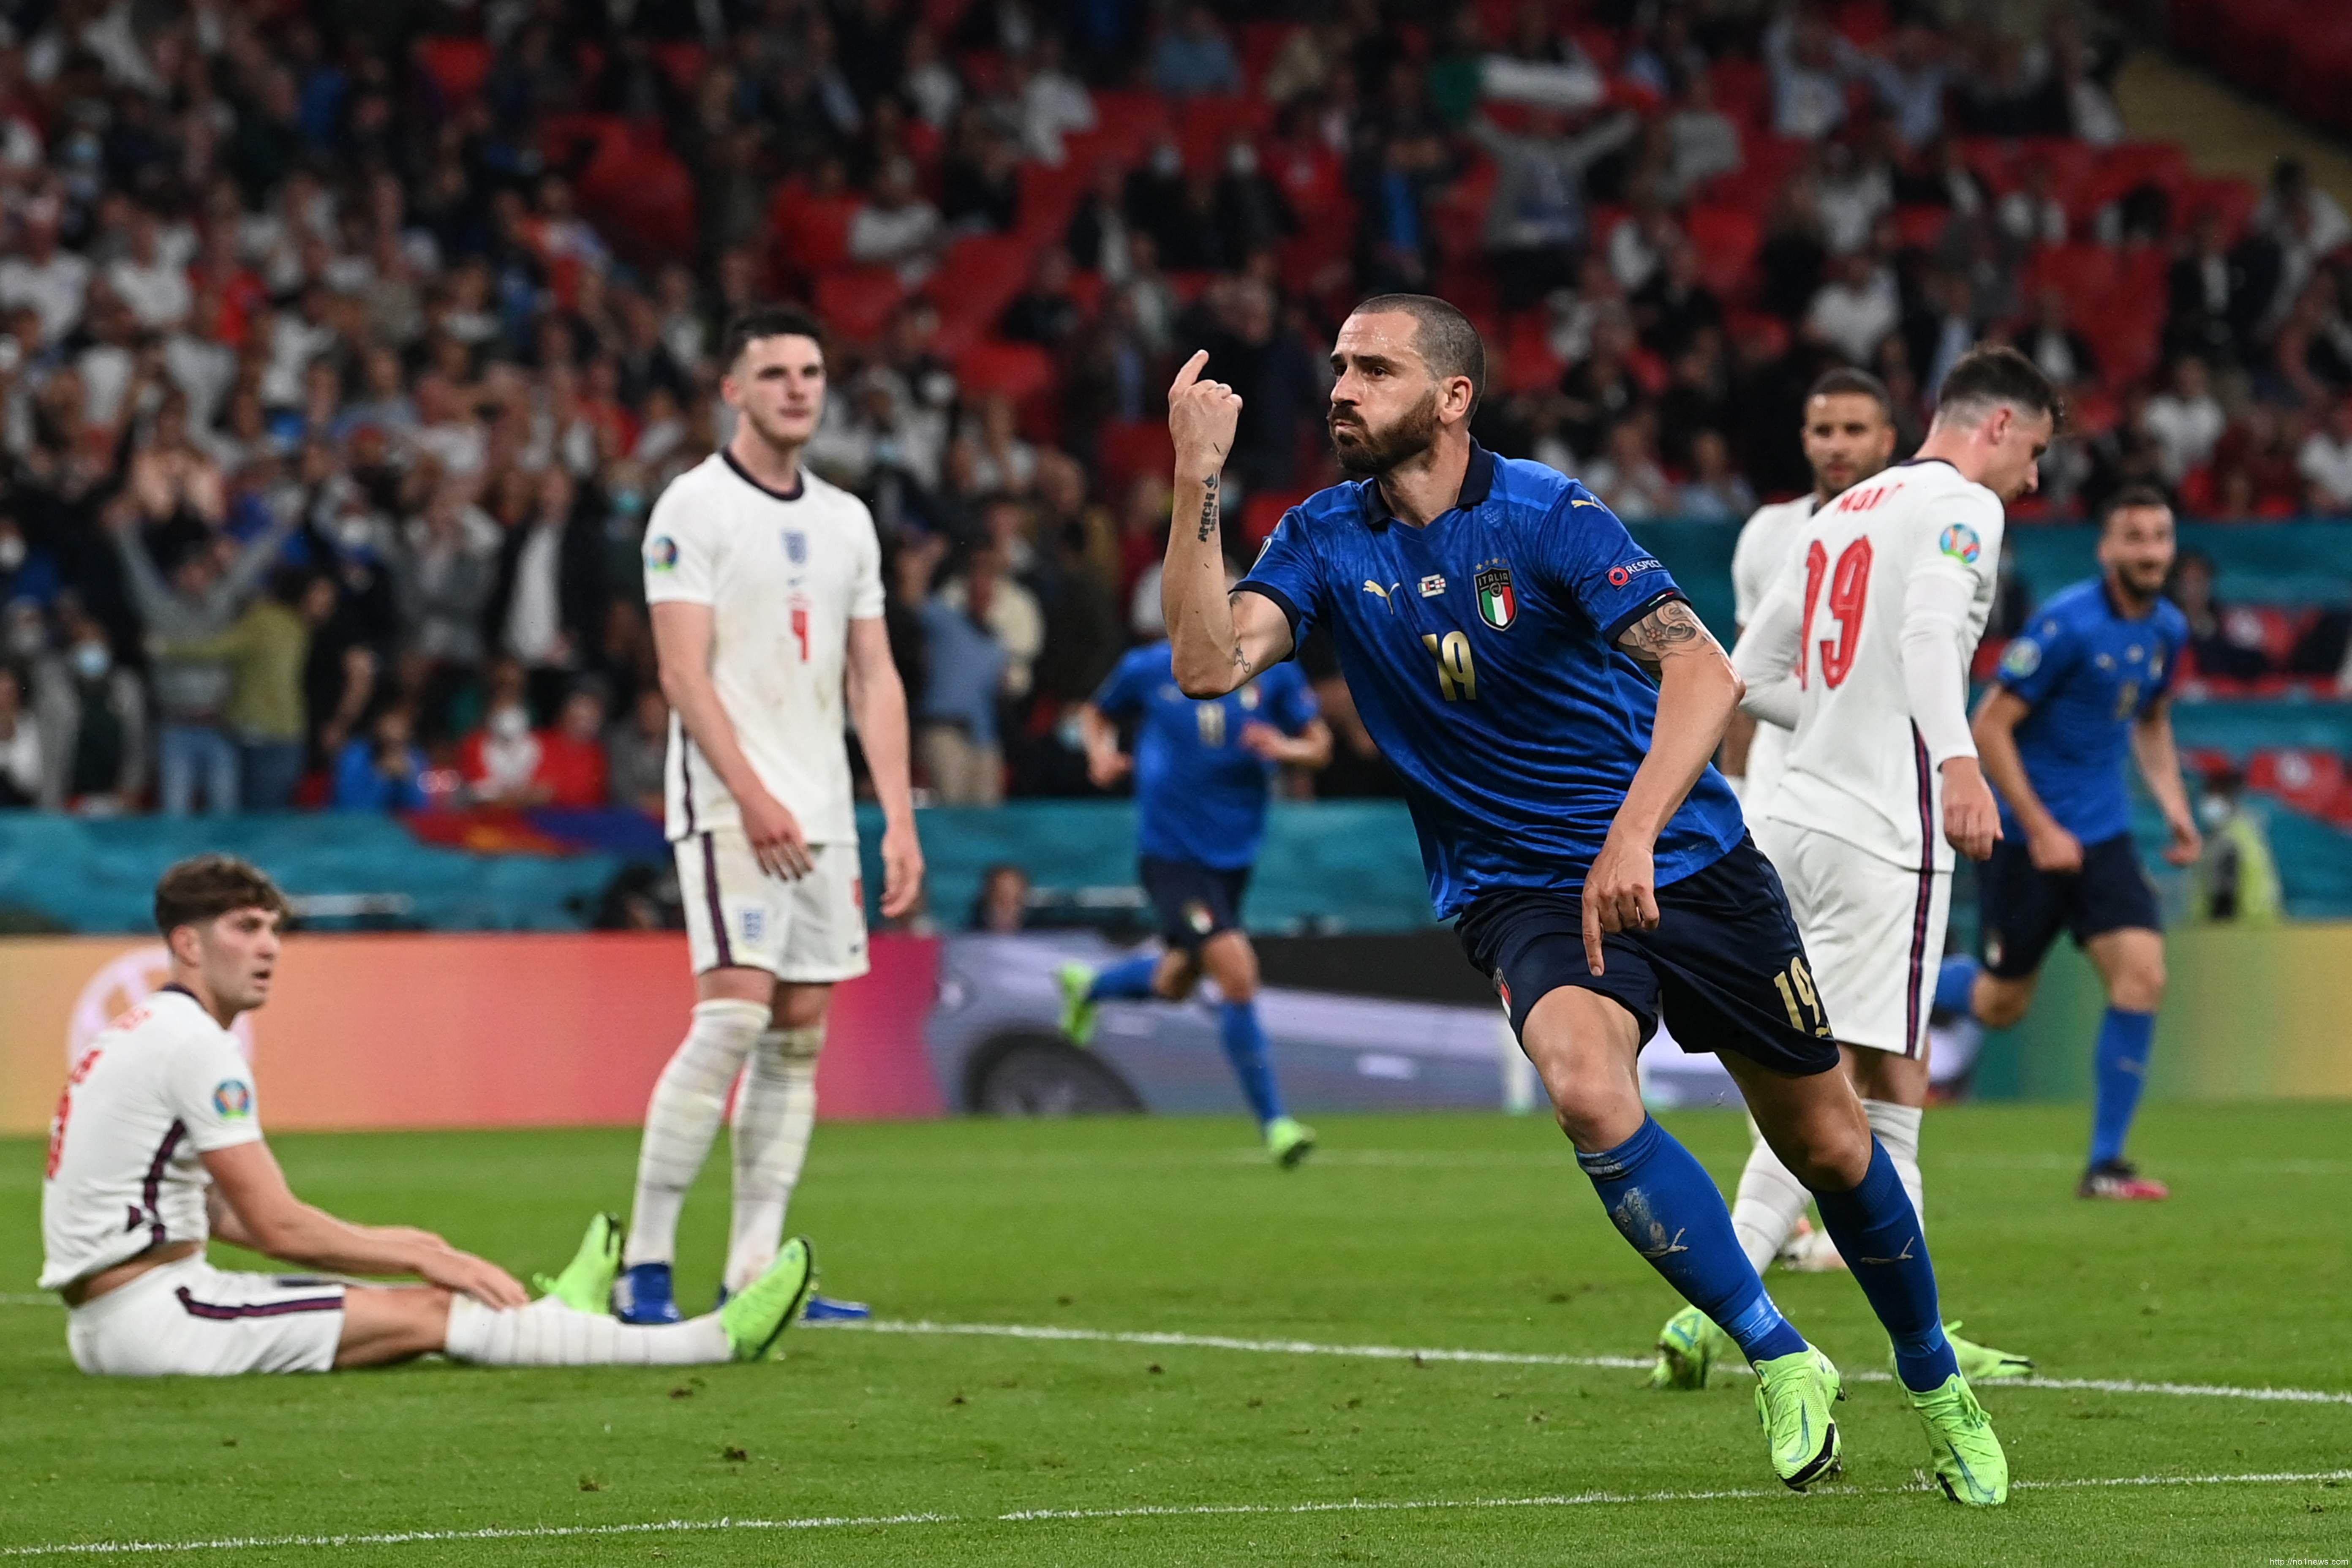 意大利点球击败英格兰,53年后再夺欧洲杯冠